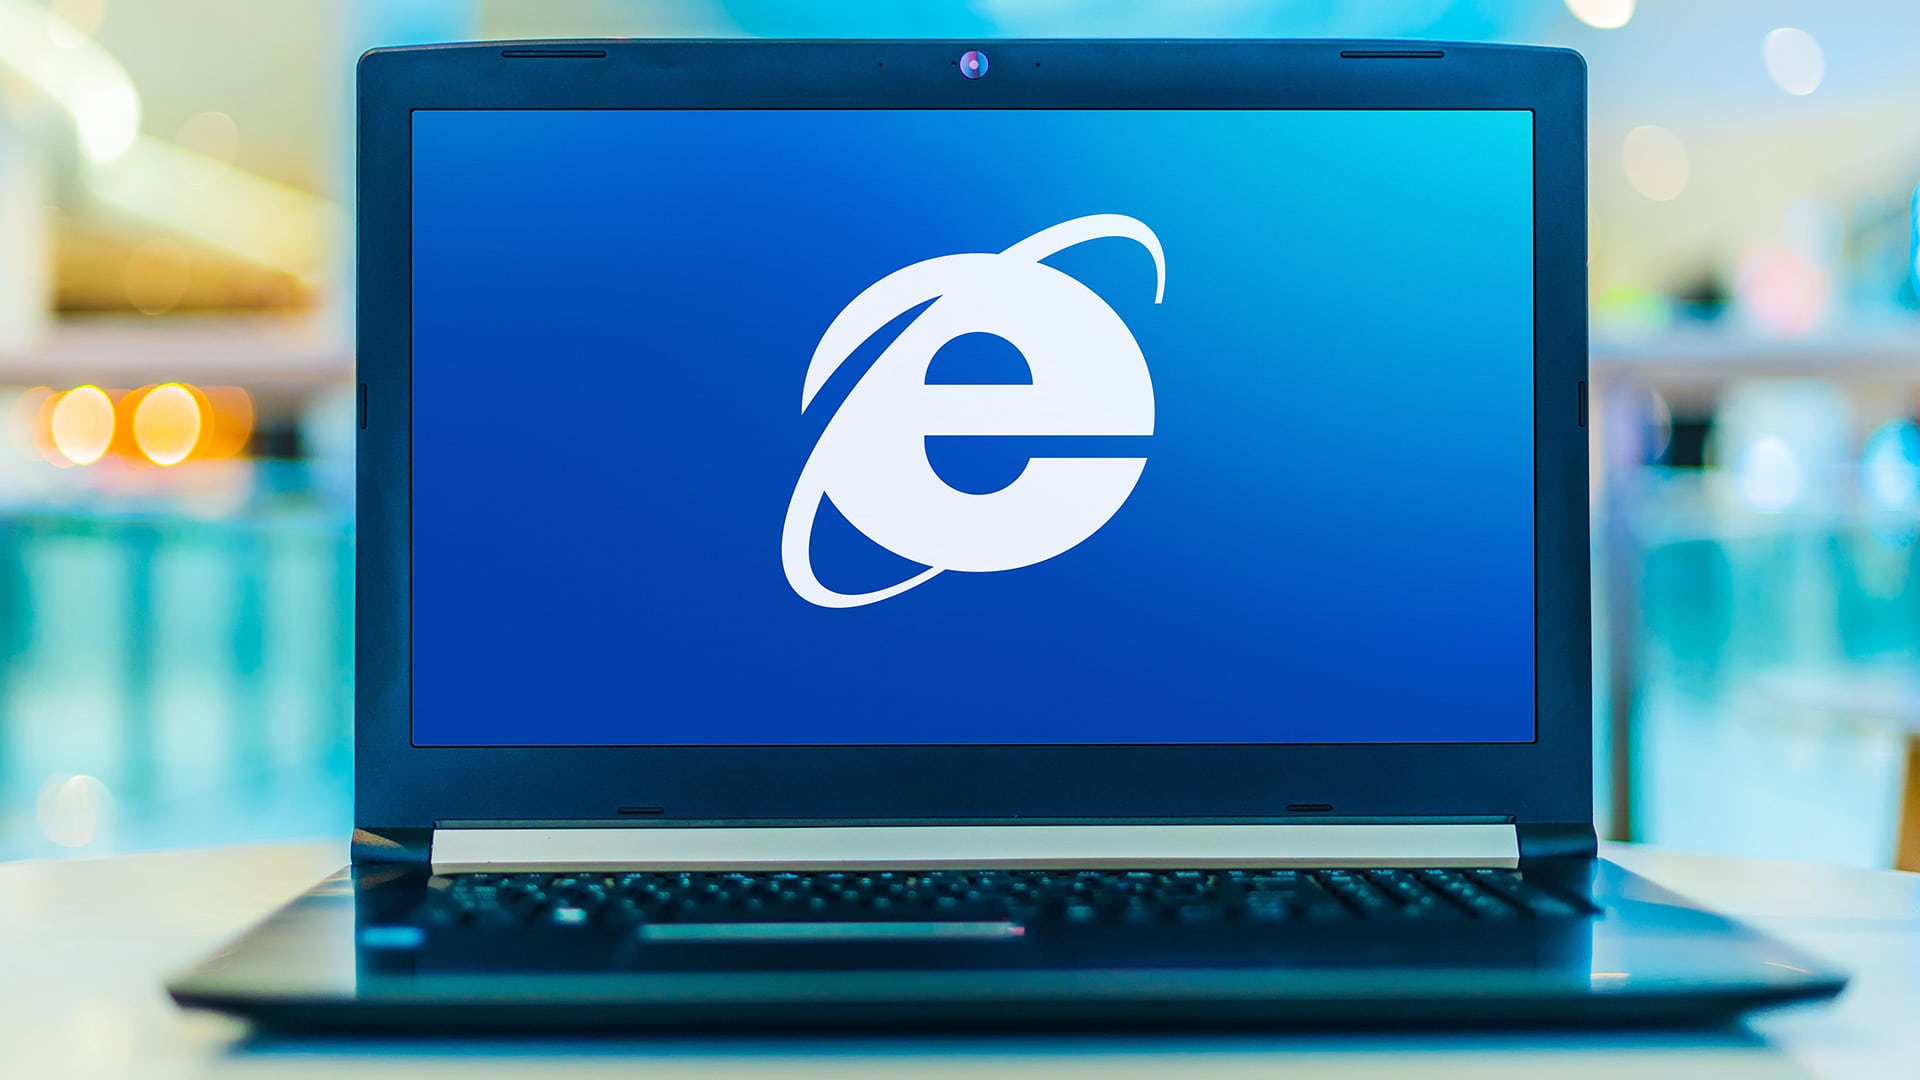 Internet Explorer va in pensione: addio allo storico browser Windows dal 15 giugno